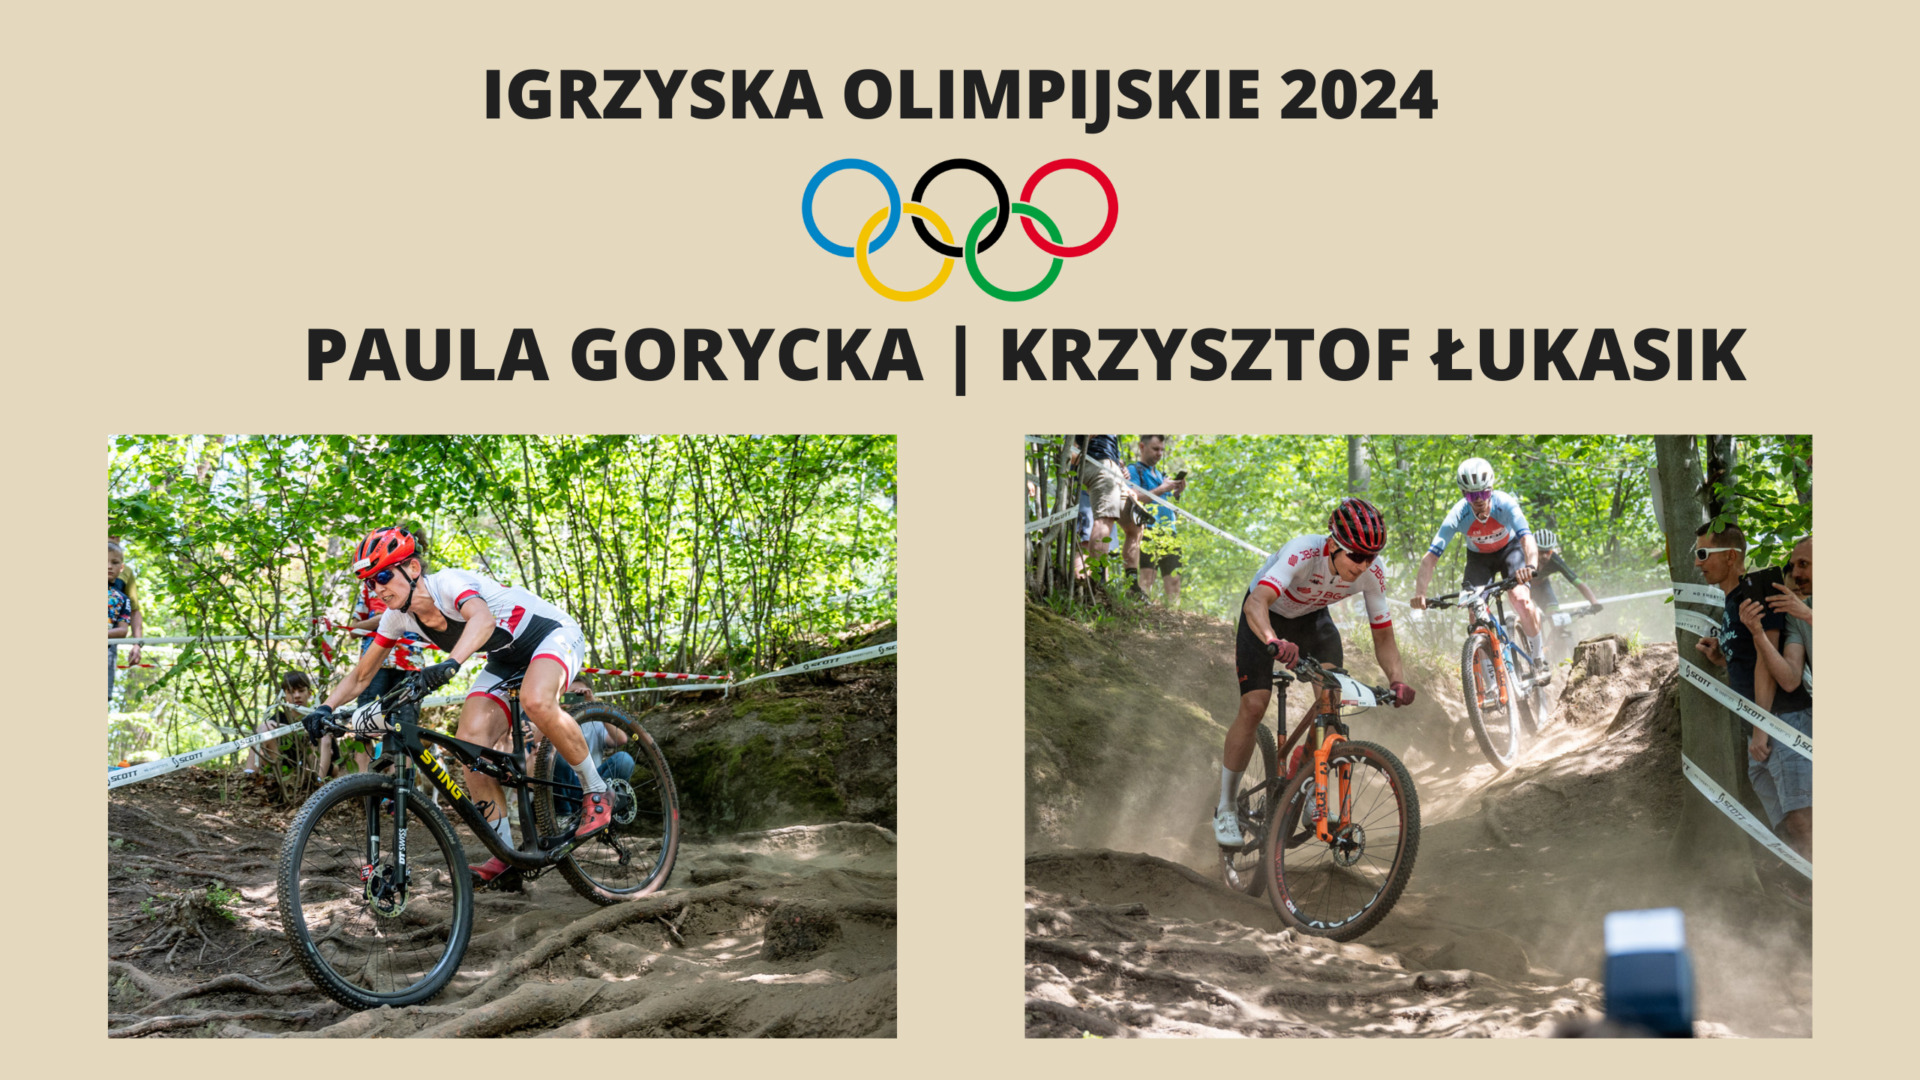 Paula Gorycka i Krzysztof Łukasik wygrywają kwalifikacje do Igrzysk Olimpijskich w Paryżu!